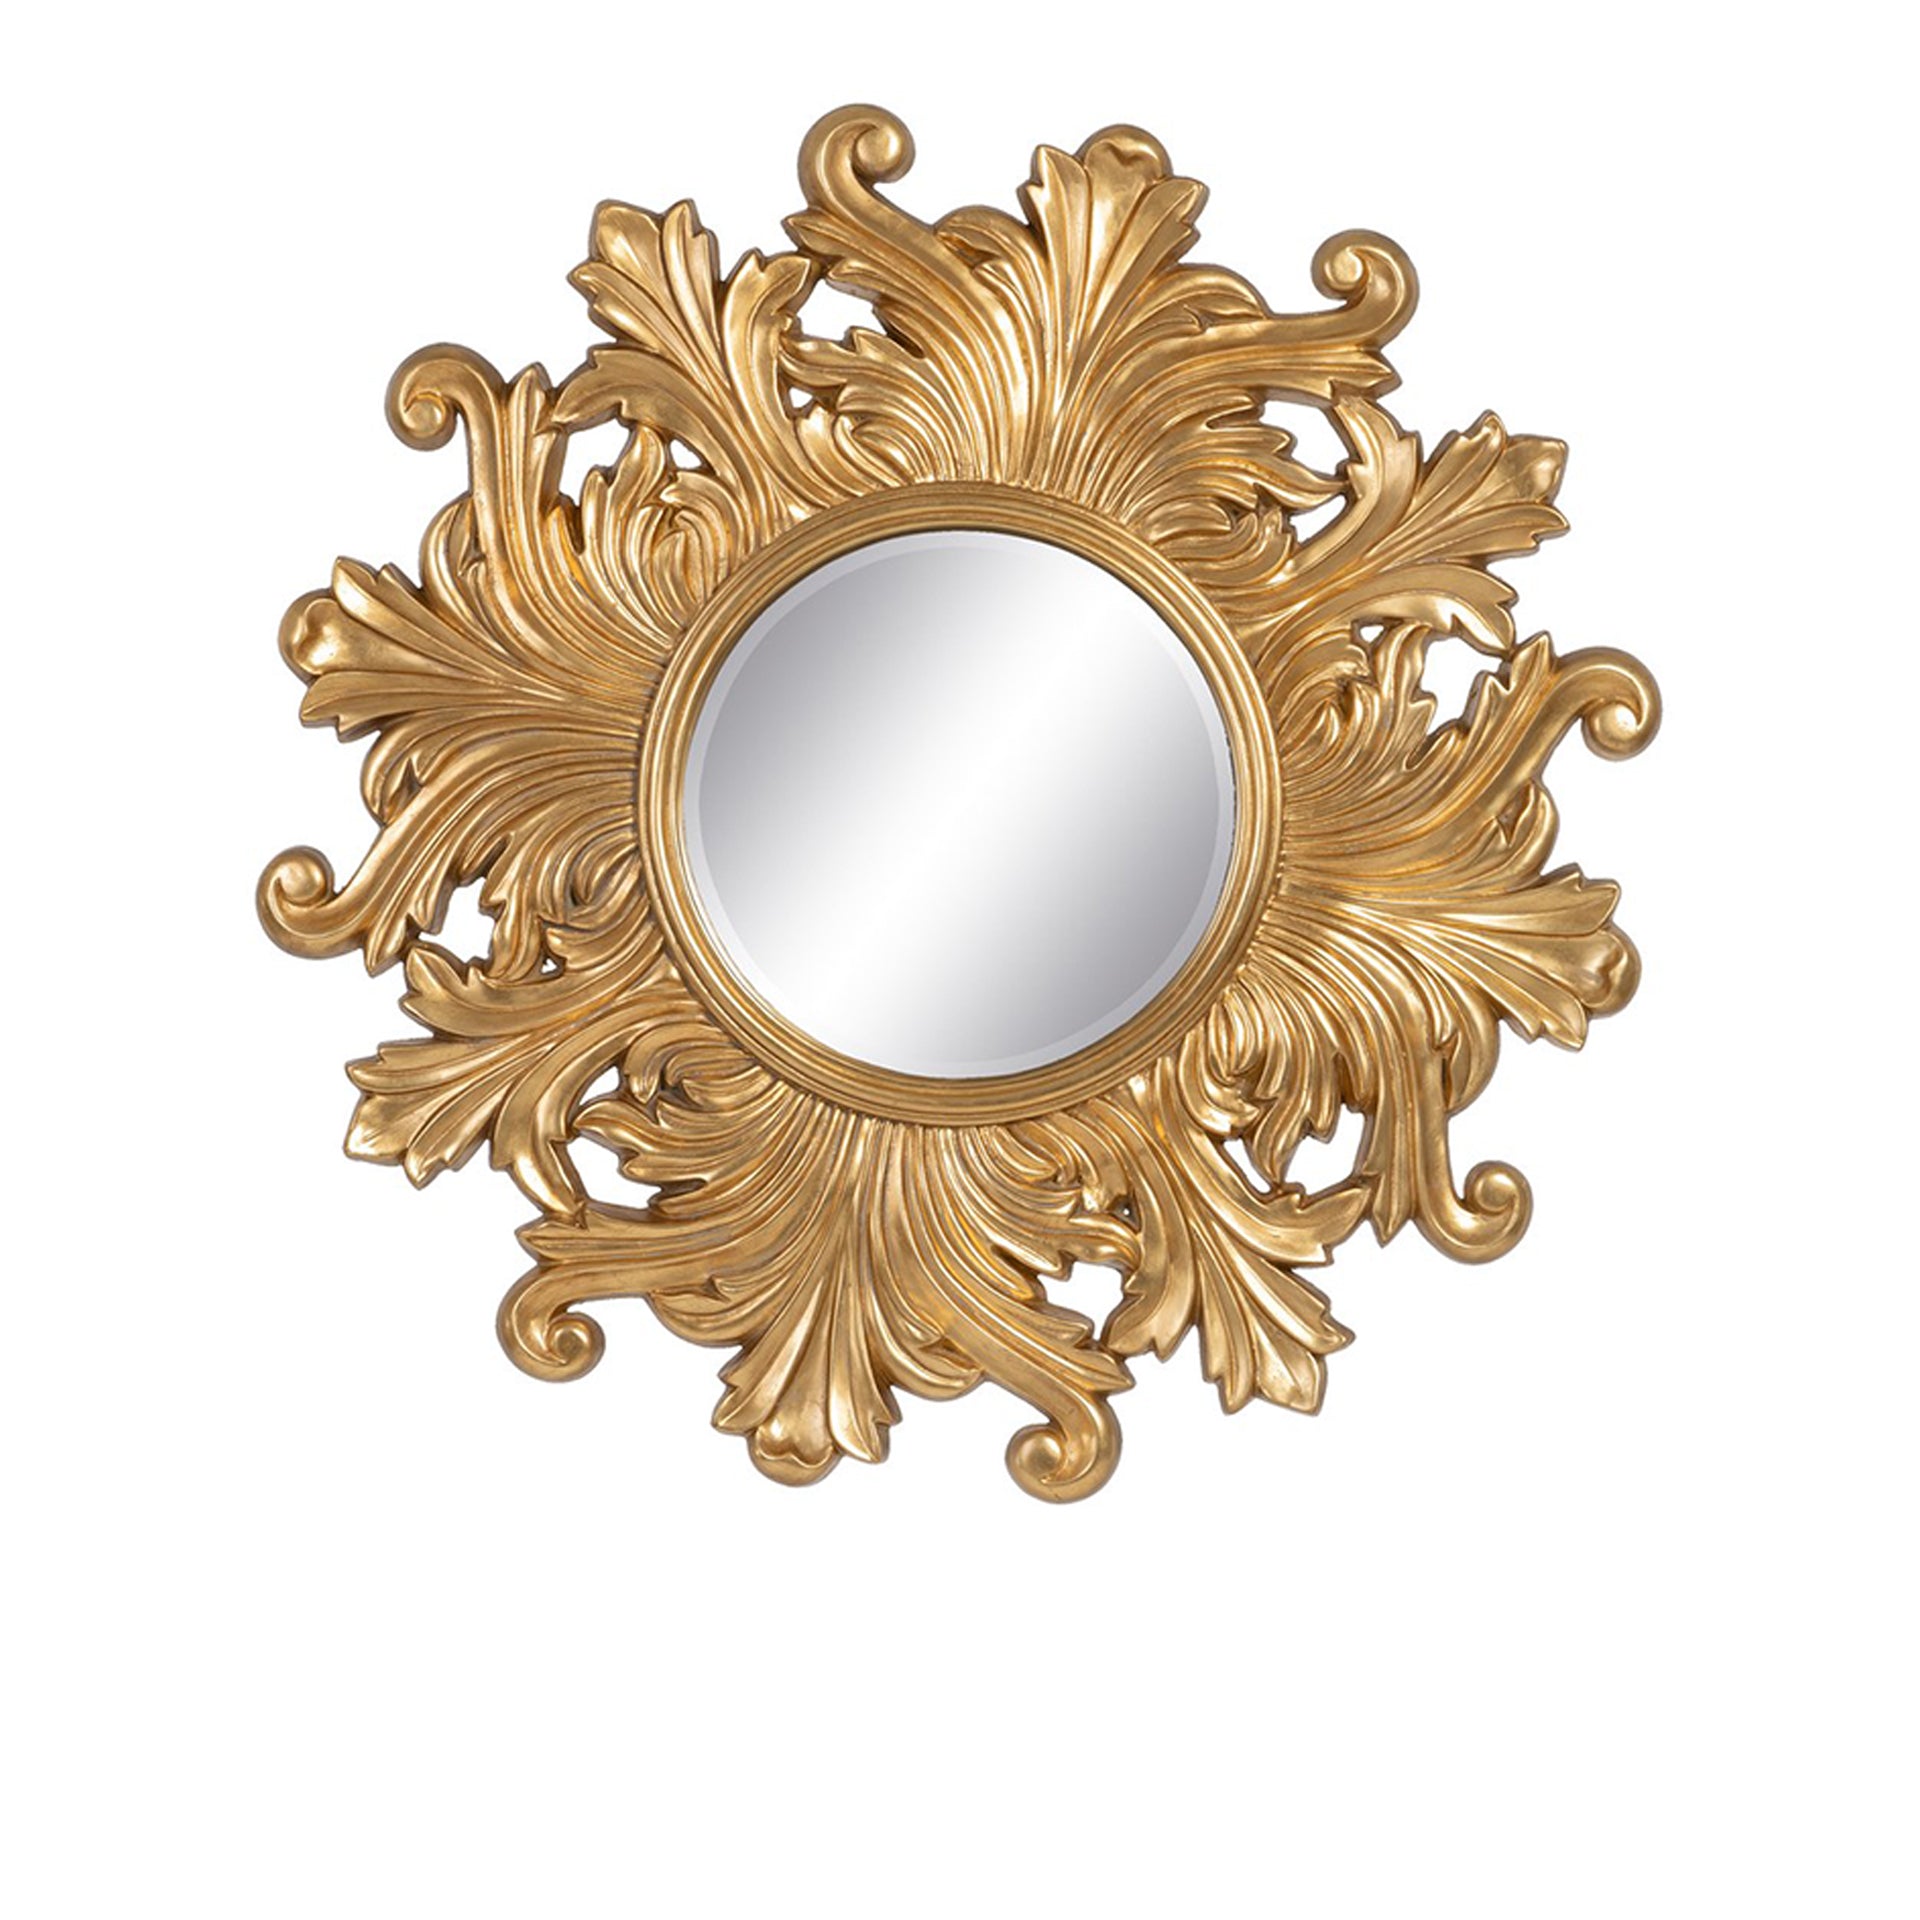 HKH Espelho de Parede Decorativo Dourado